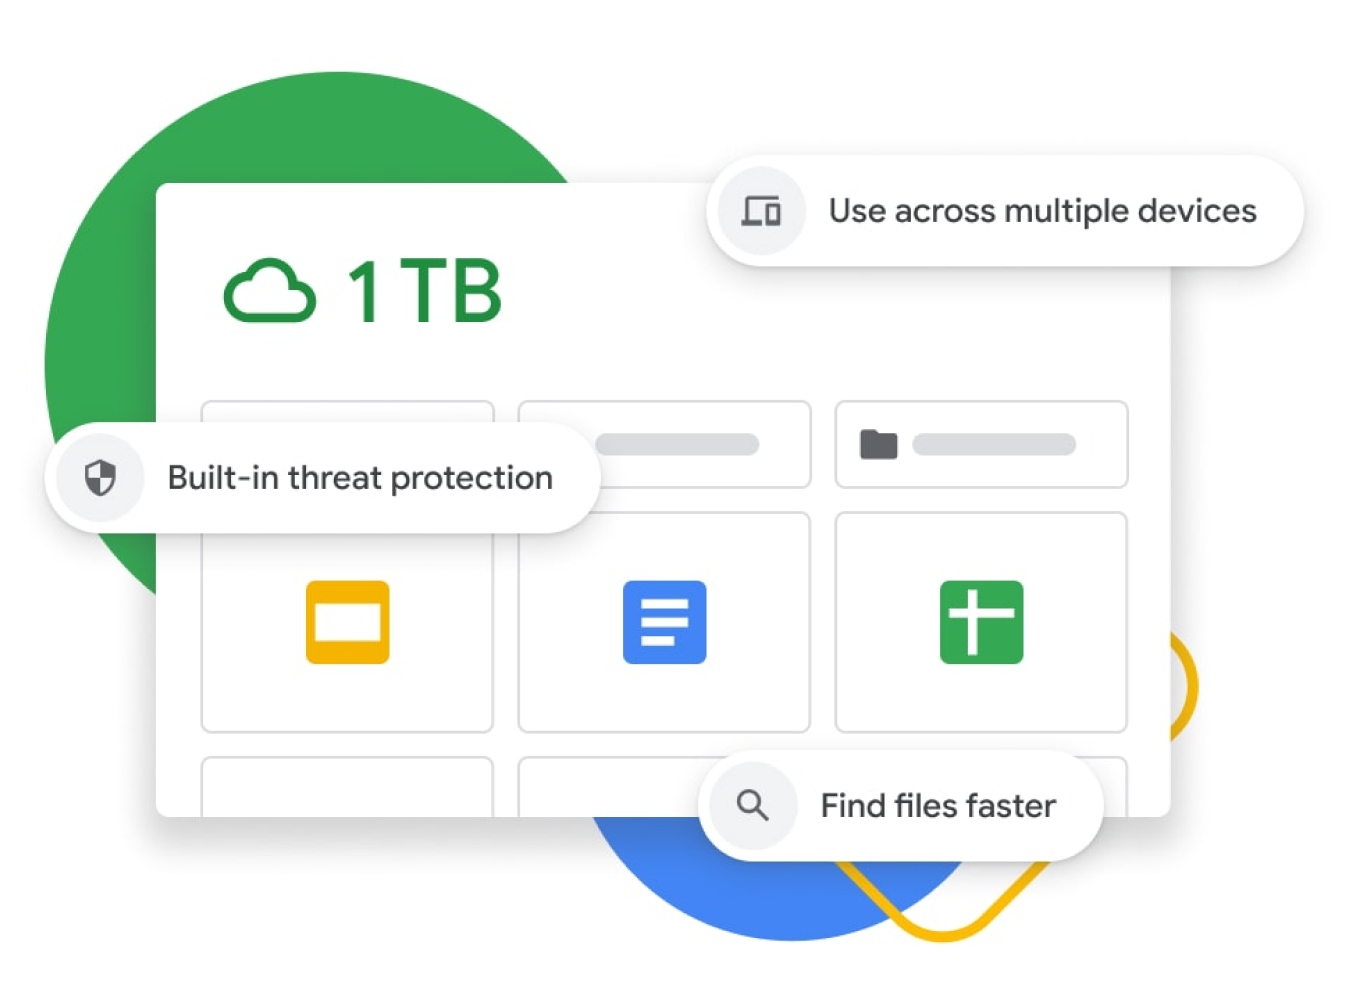 Google 雲端硬碟資訊主頁的圖像，顯示提供 1 TB 儲存空間、內建威脅防護、支援跨裝置同步和強化搜尋功能。